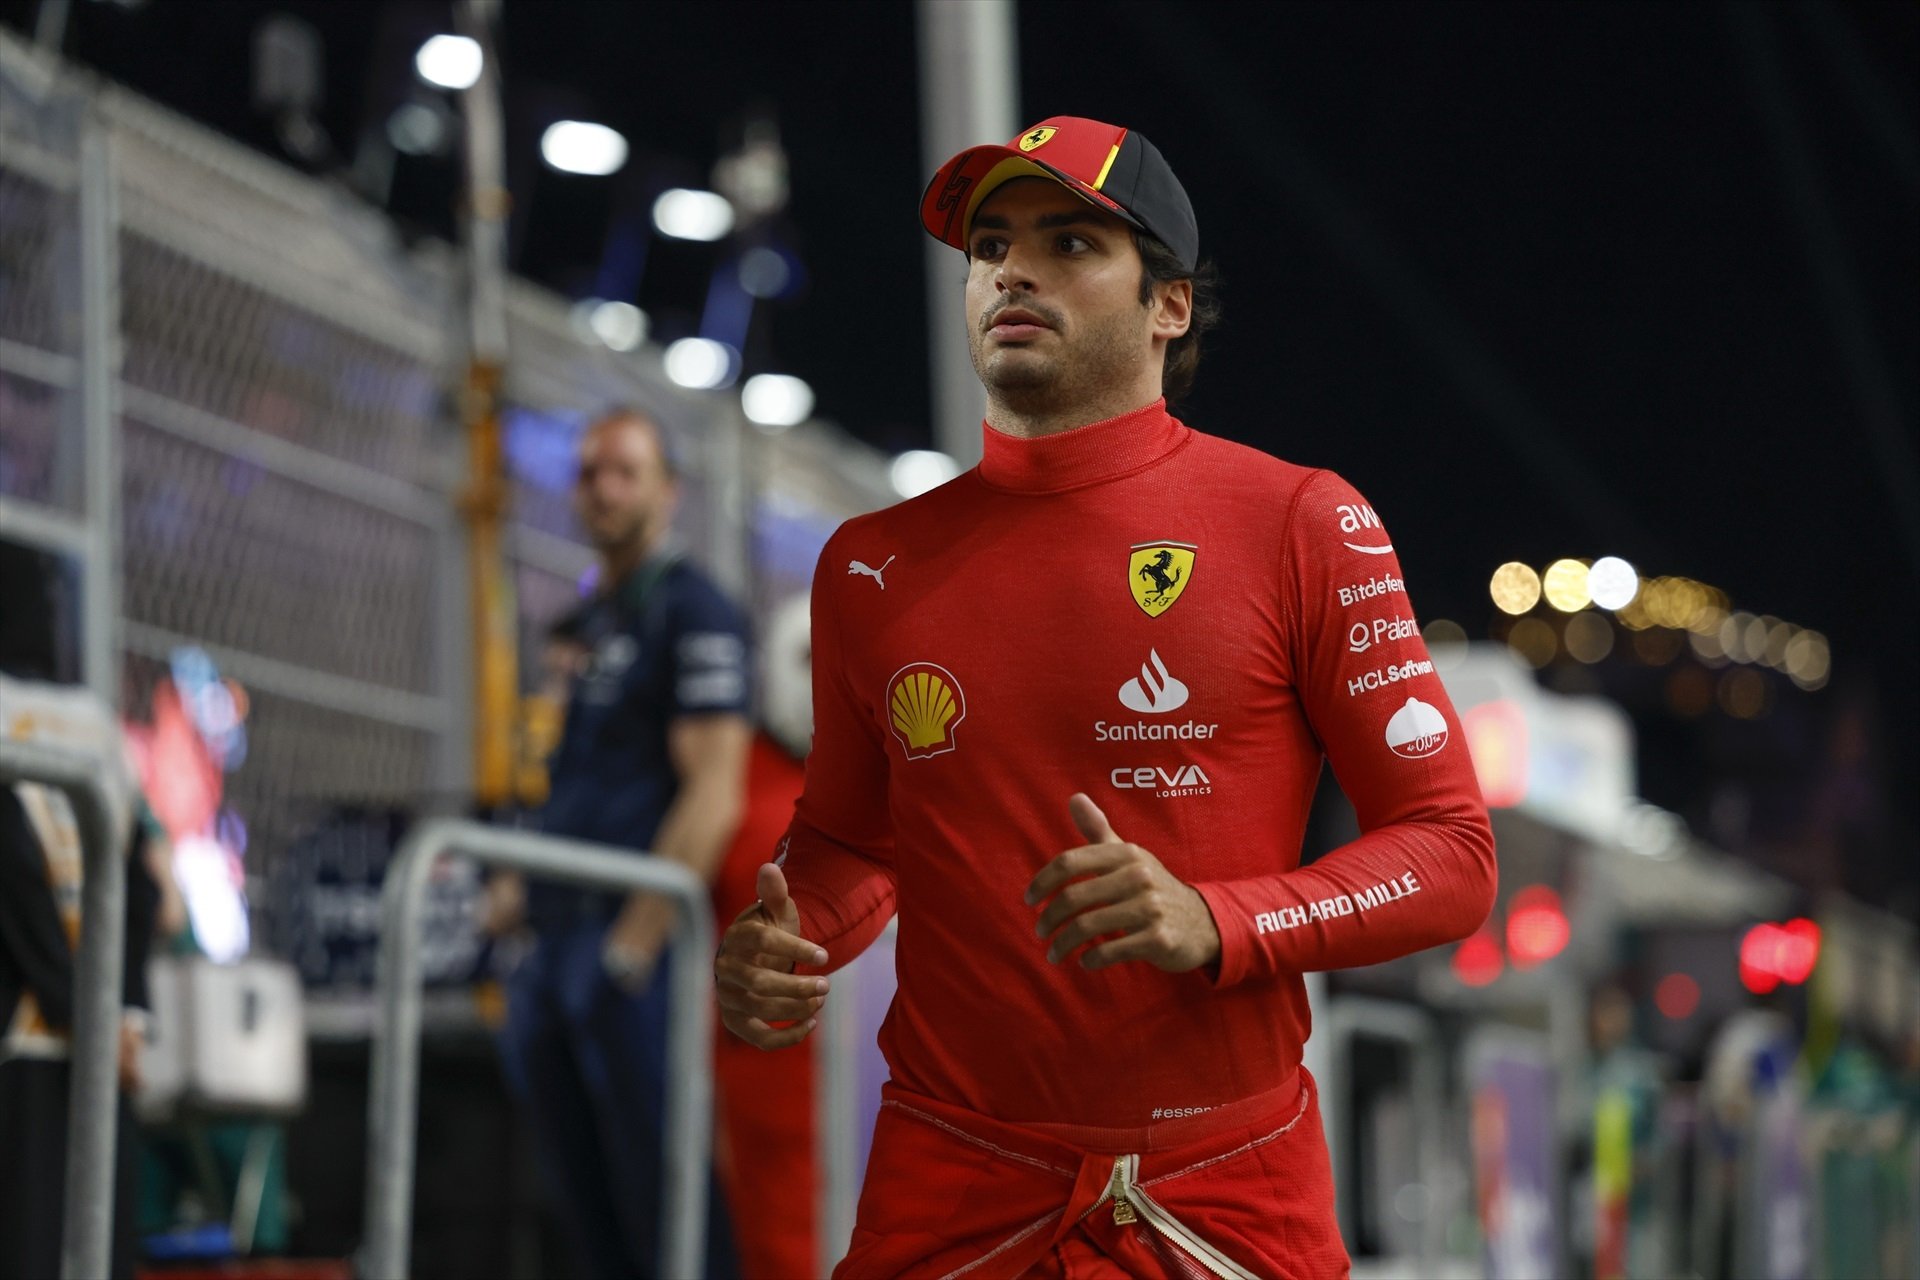 Carlos Sainz, 2 ofertes per sortir del Ferrari, una és per enrere, però l'altra és una oportunitat